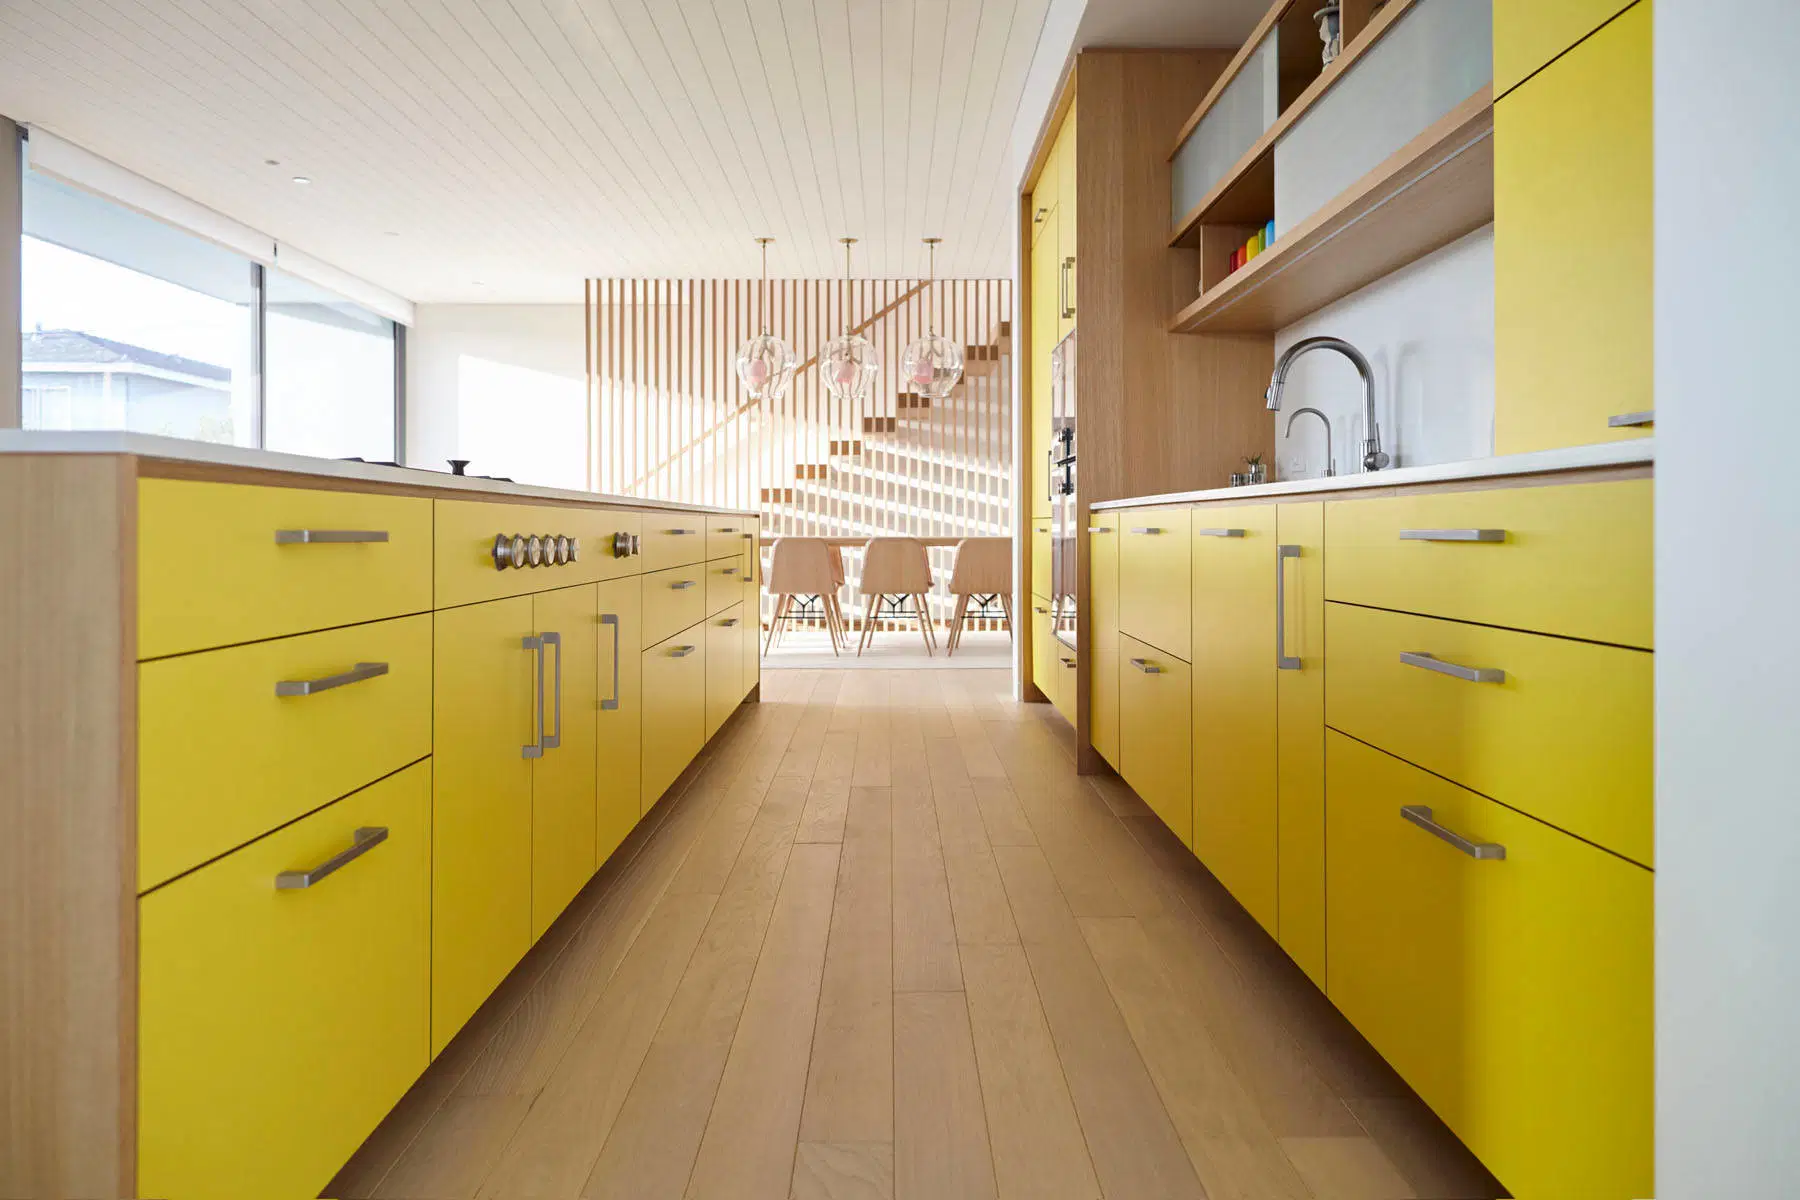 تصميم مسطح أصفر اللون لوحة الباب الملامين أثاث المنزل مطبخ خزانة الأفكار